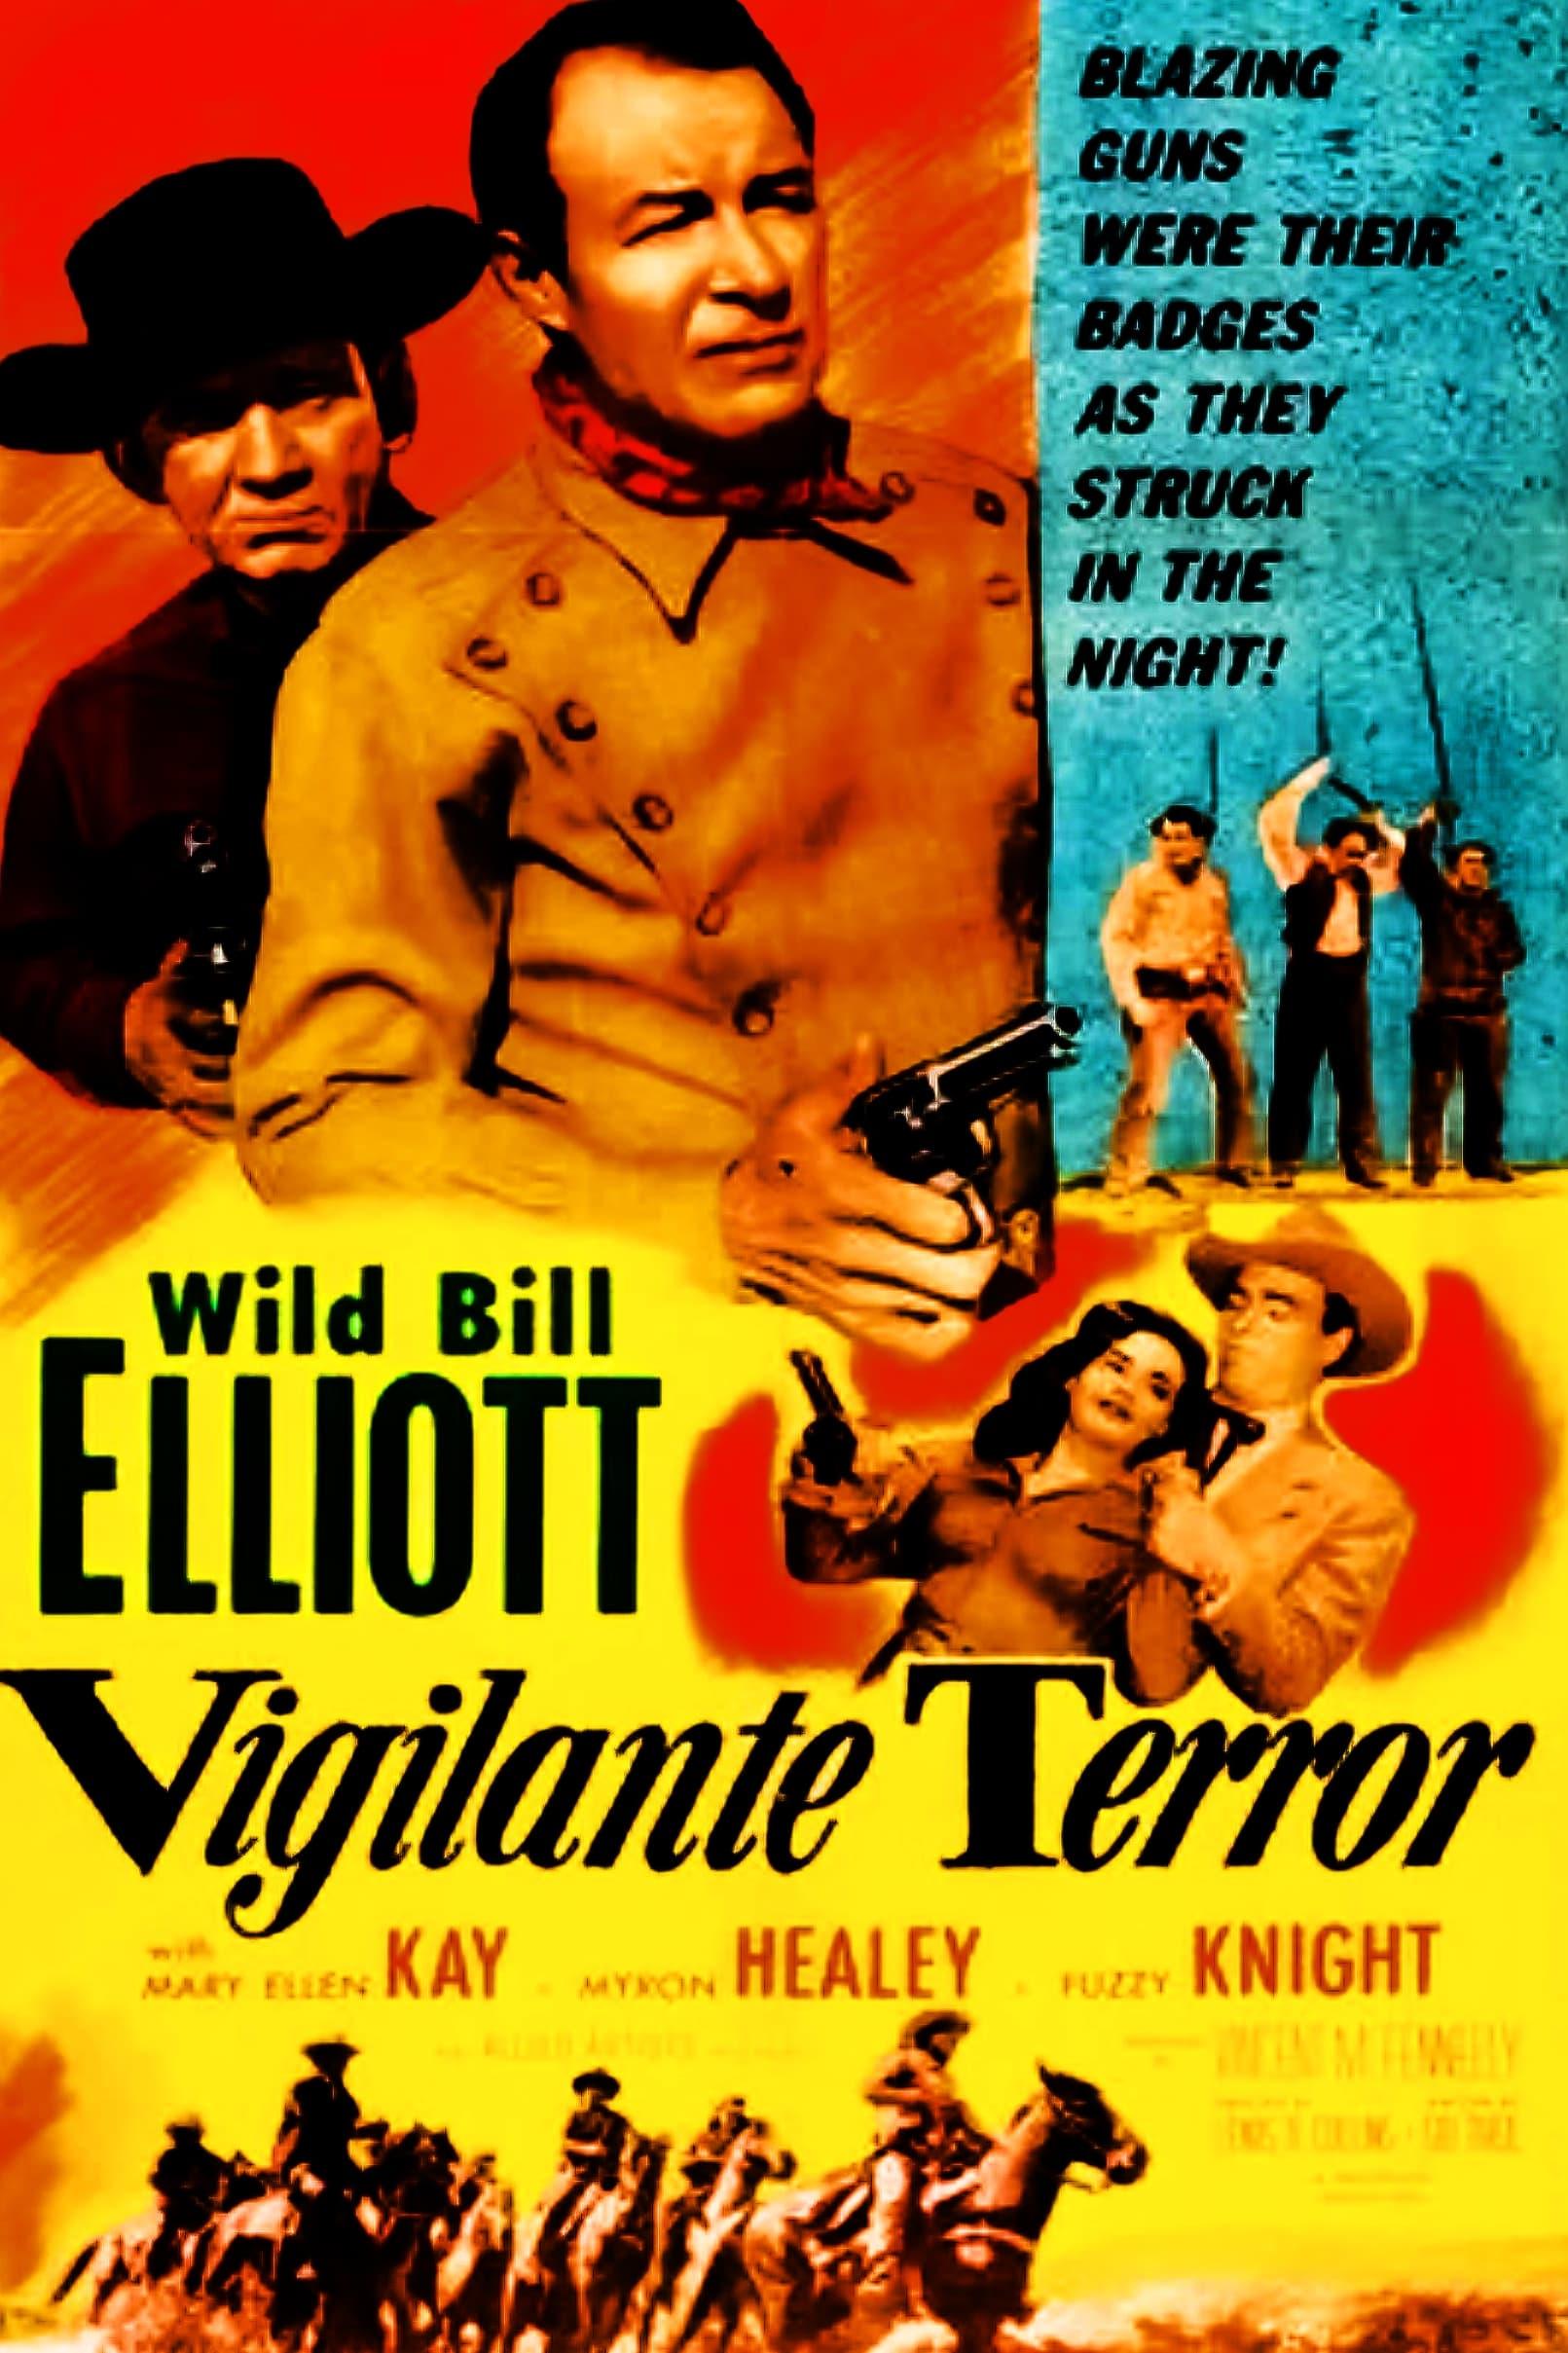 Vigilante Terror poster